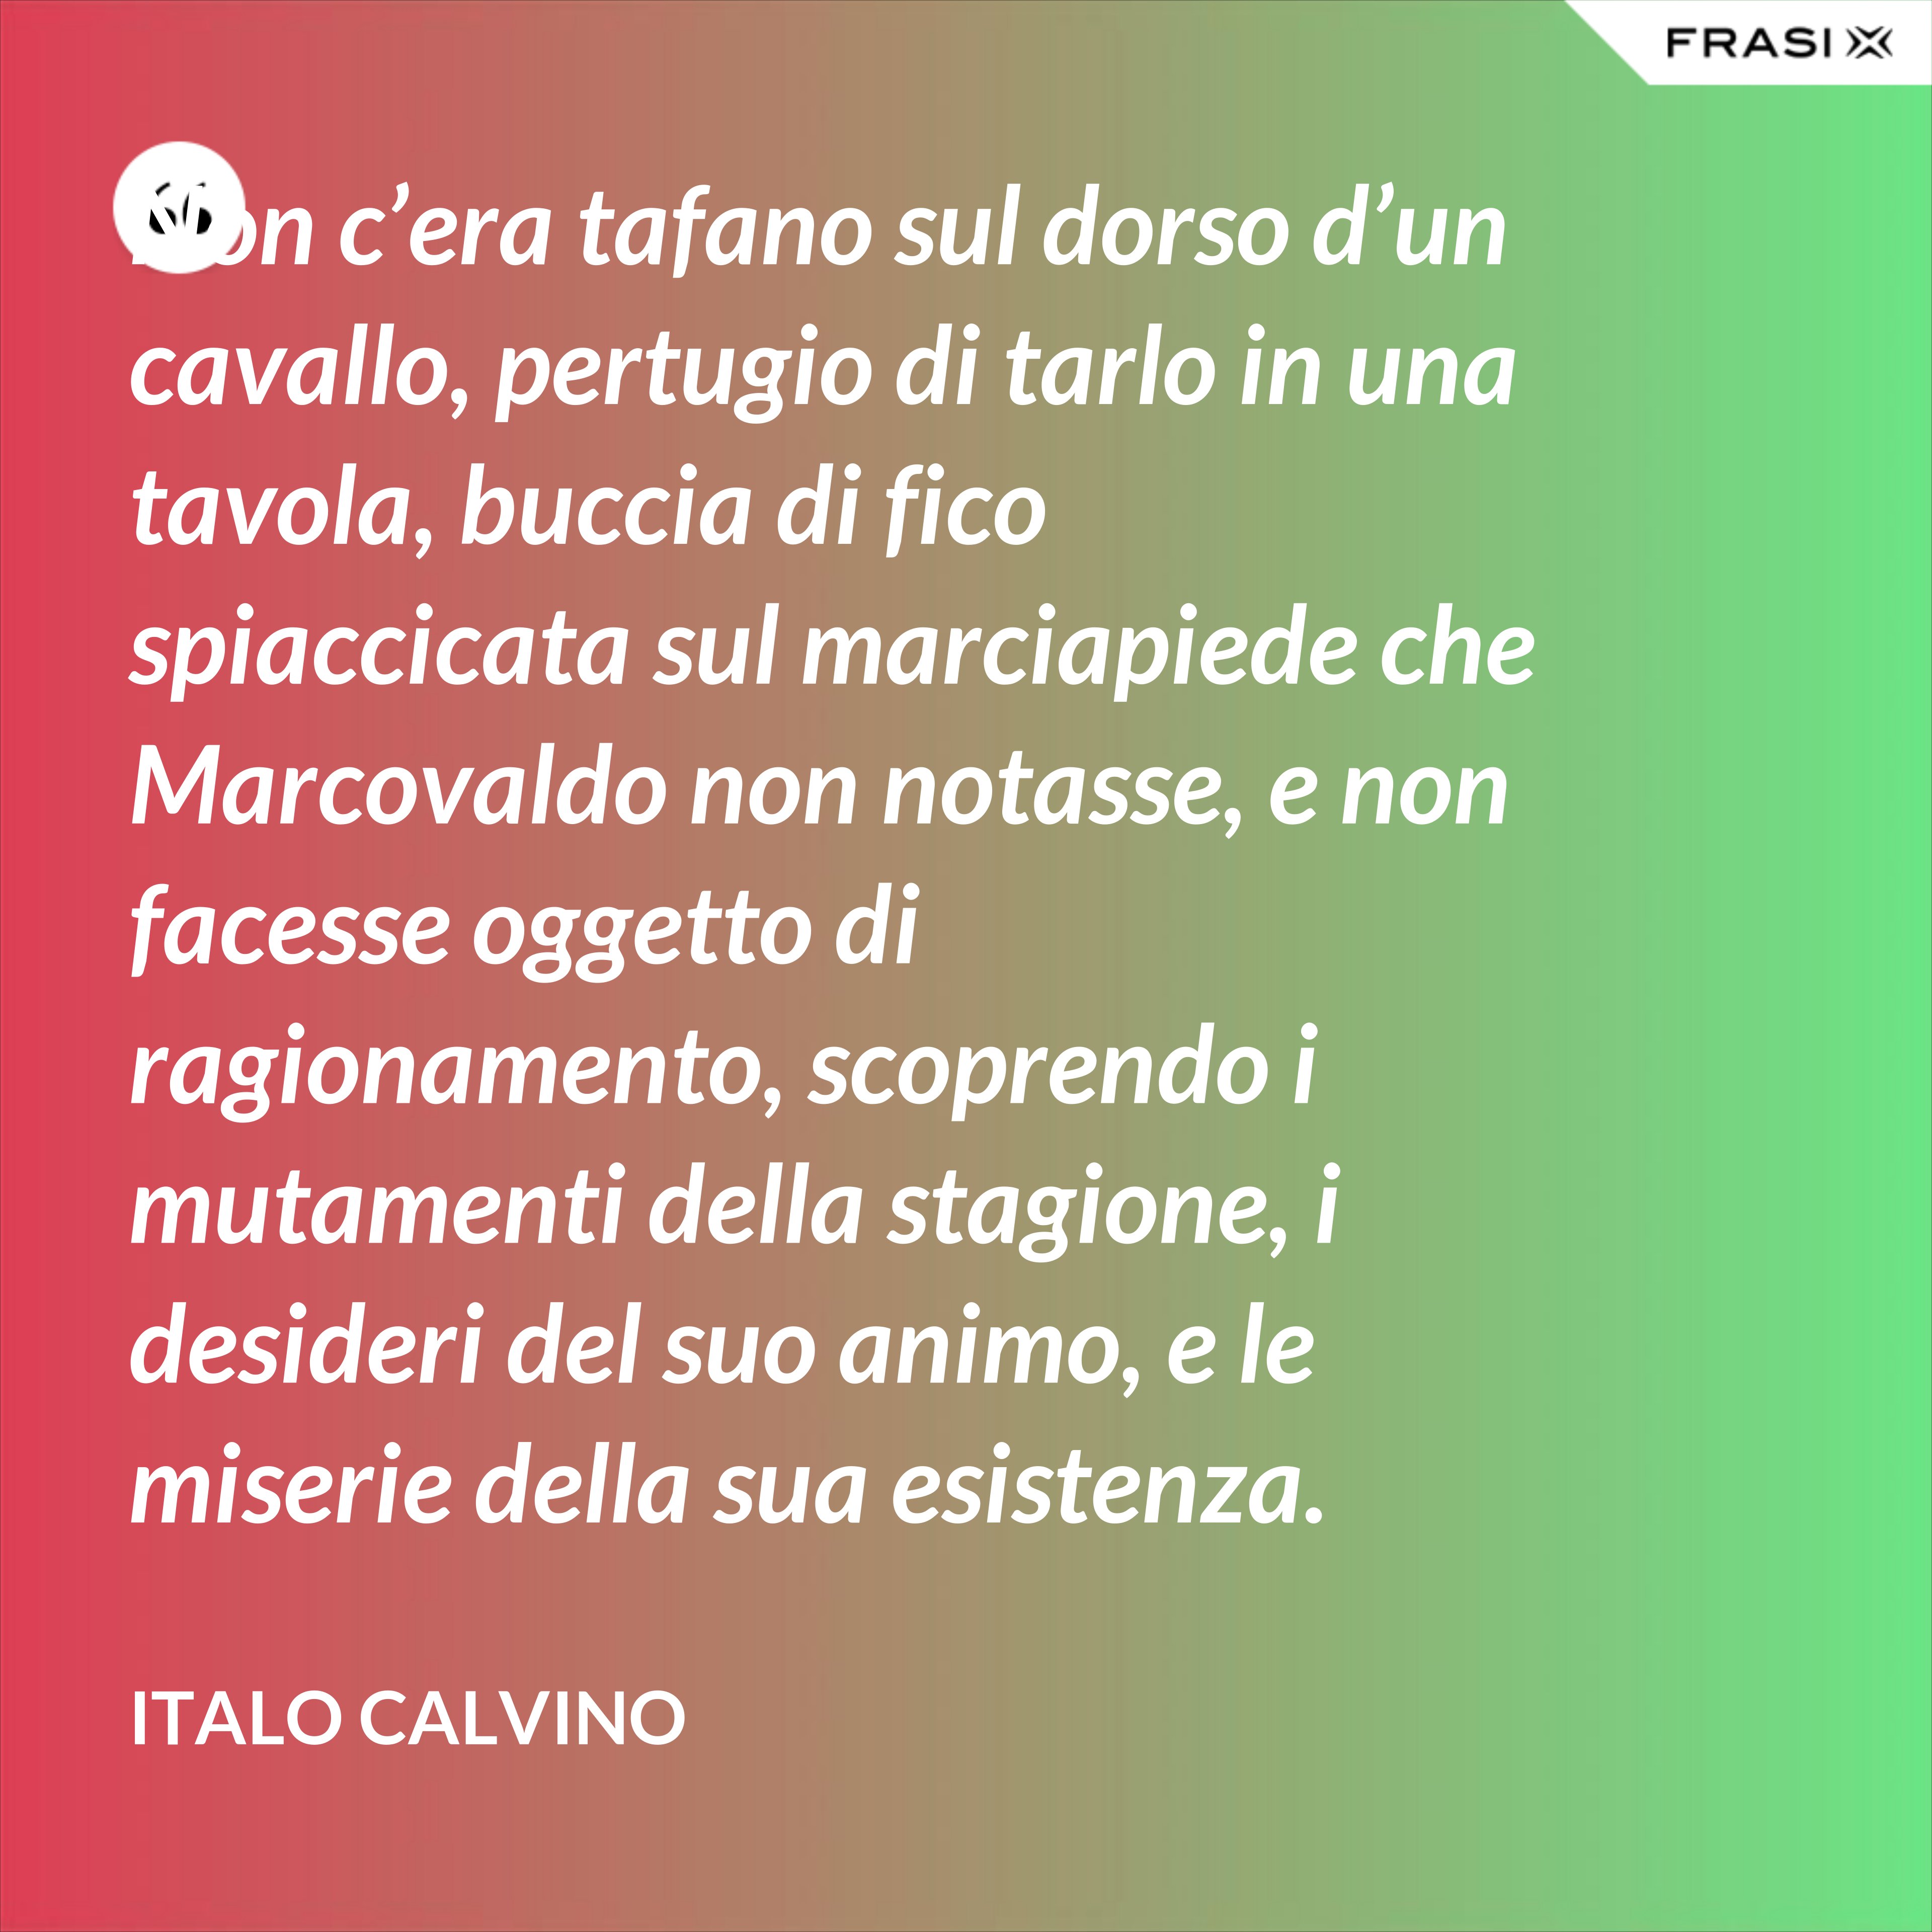 Non c’era tafano sul dorso d’un cavallo, pertugio di tarlo in una tavola, buccia di fico spiaccicata sul marciapiede che Marcovaldo non notasse, e non facesse oggetto di ragionamento, scoprendo i mutamenti della stagione, i desideri del suo animo, e le miserie della sua esistenza. - Italo Calvino